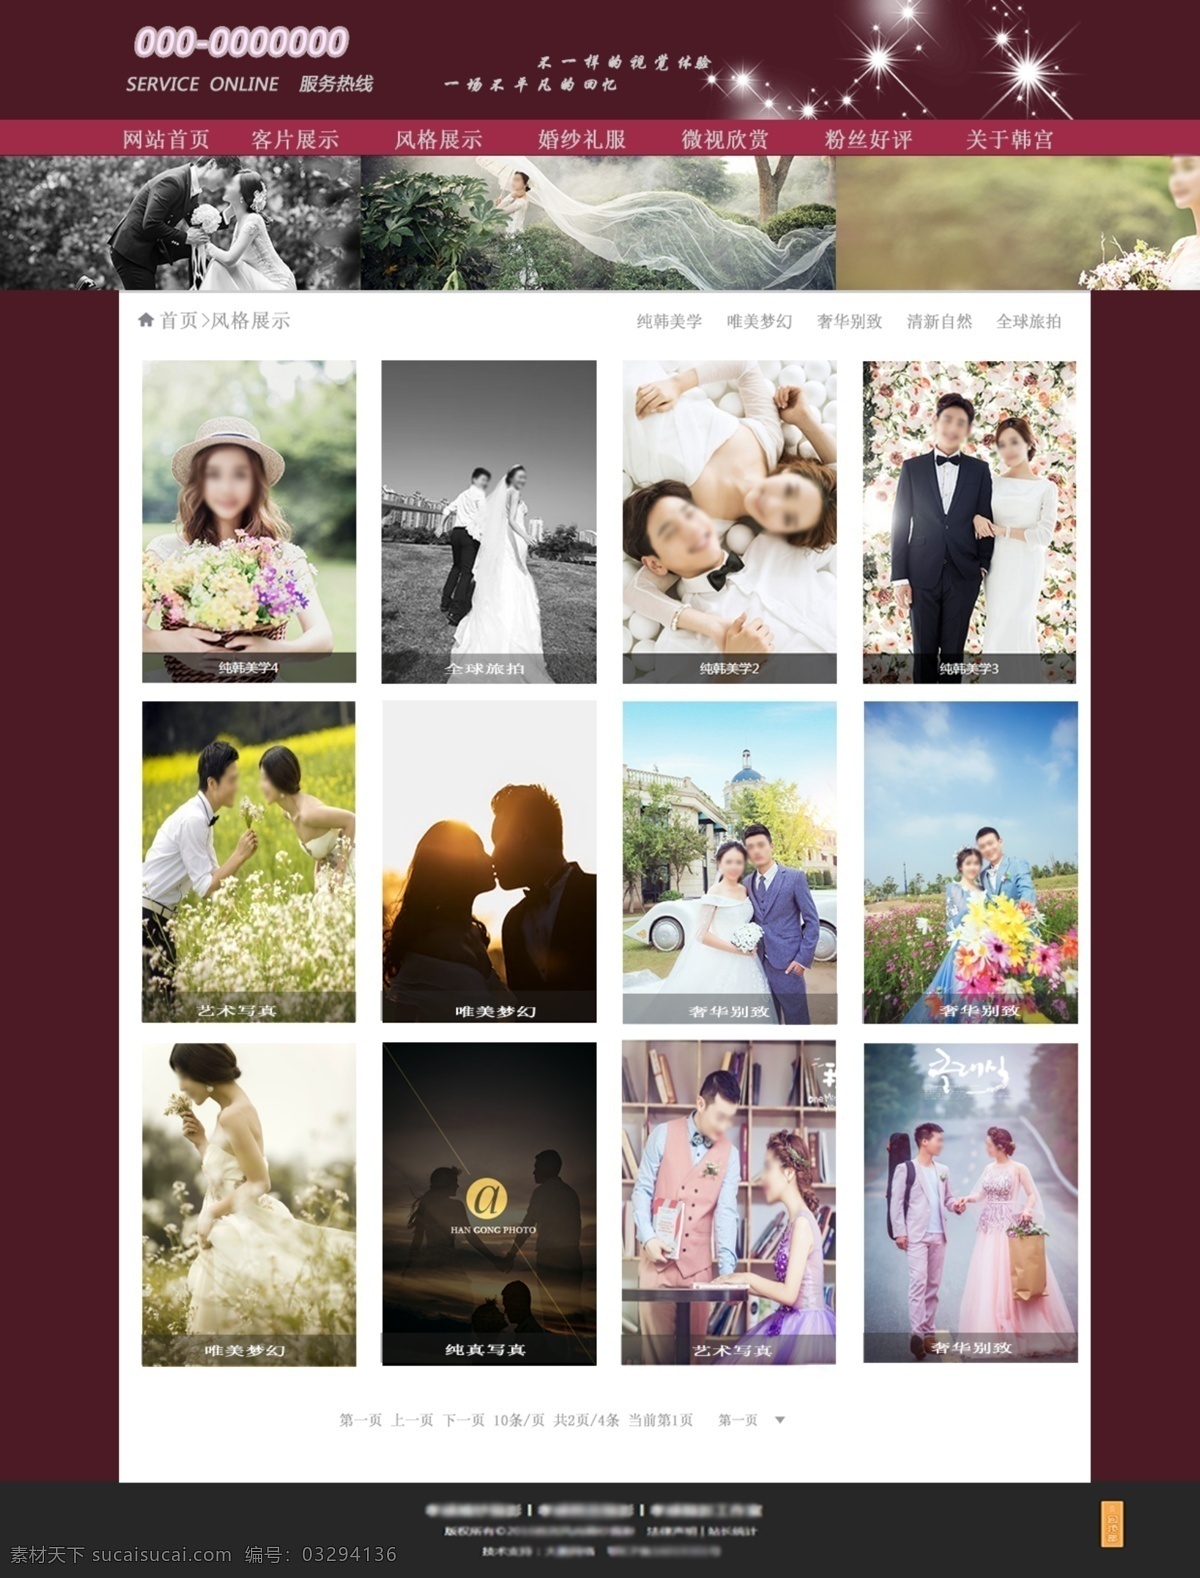 pc 端 婚纱摄影 主题 网页模板 纯洁 浪漫 高贵 永恒久远 紫色 网页 界面 模板